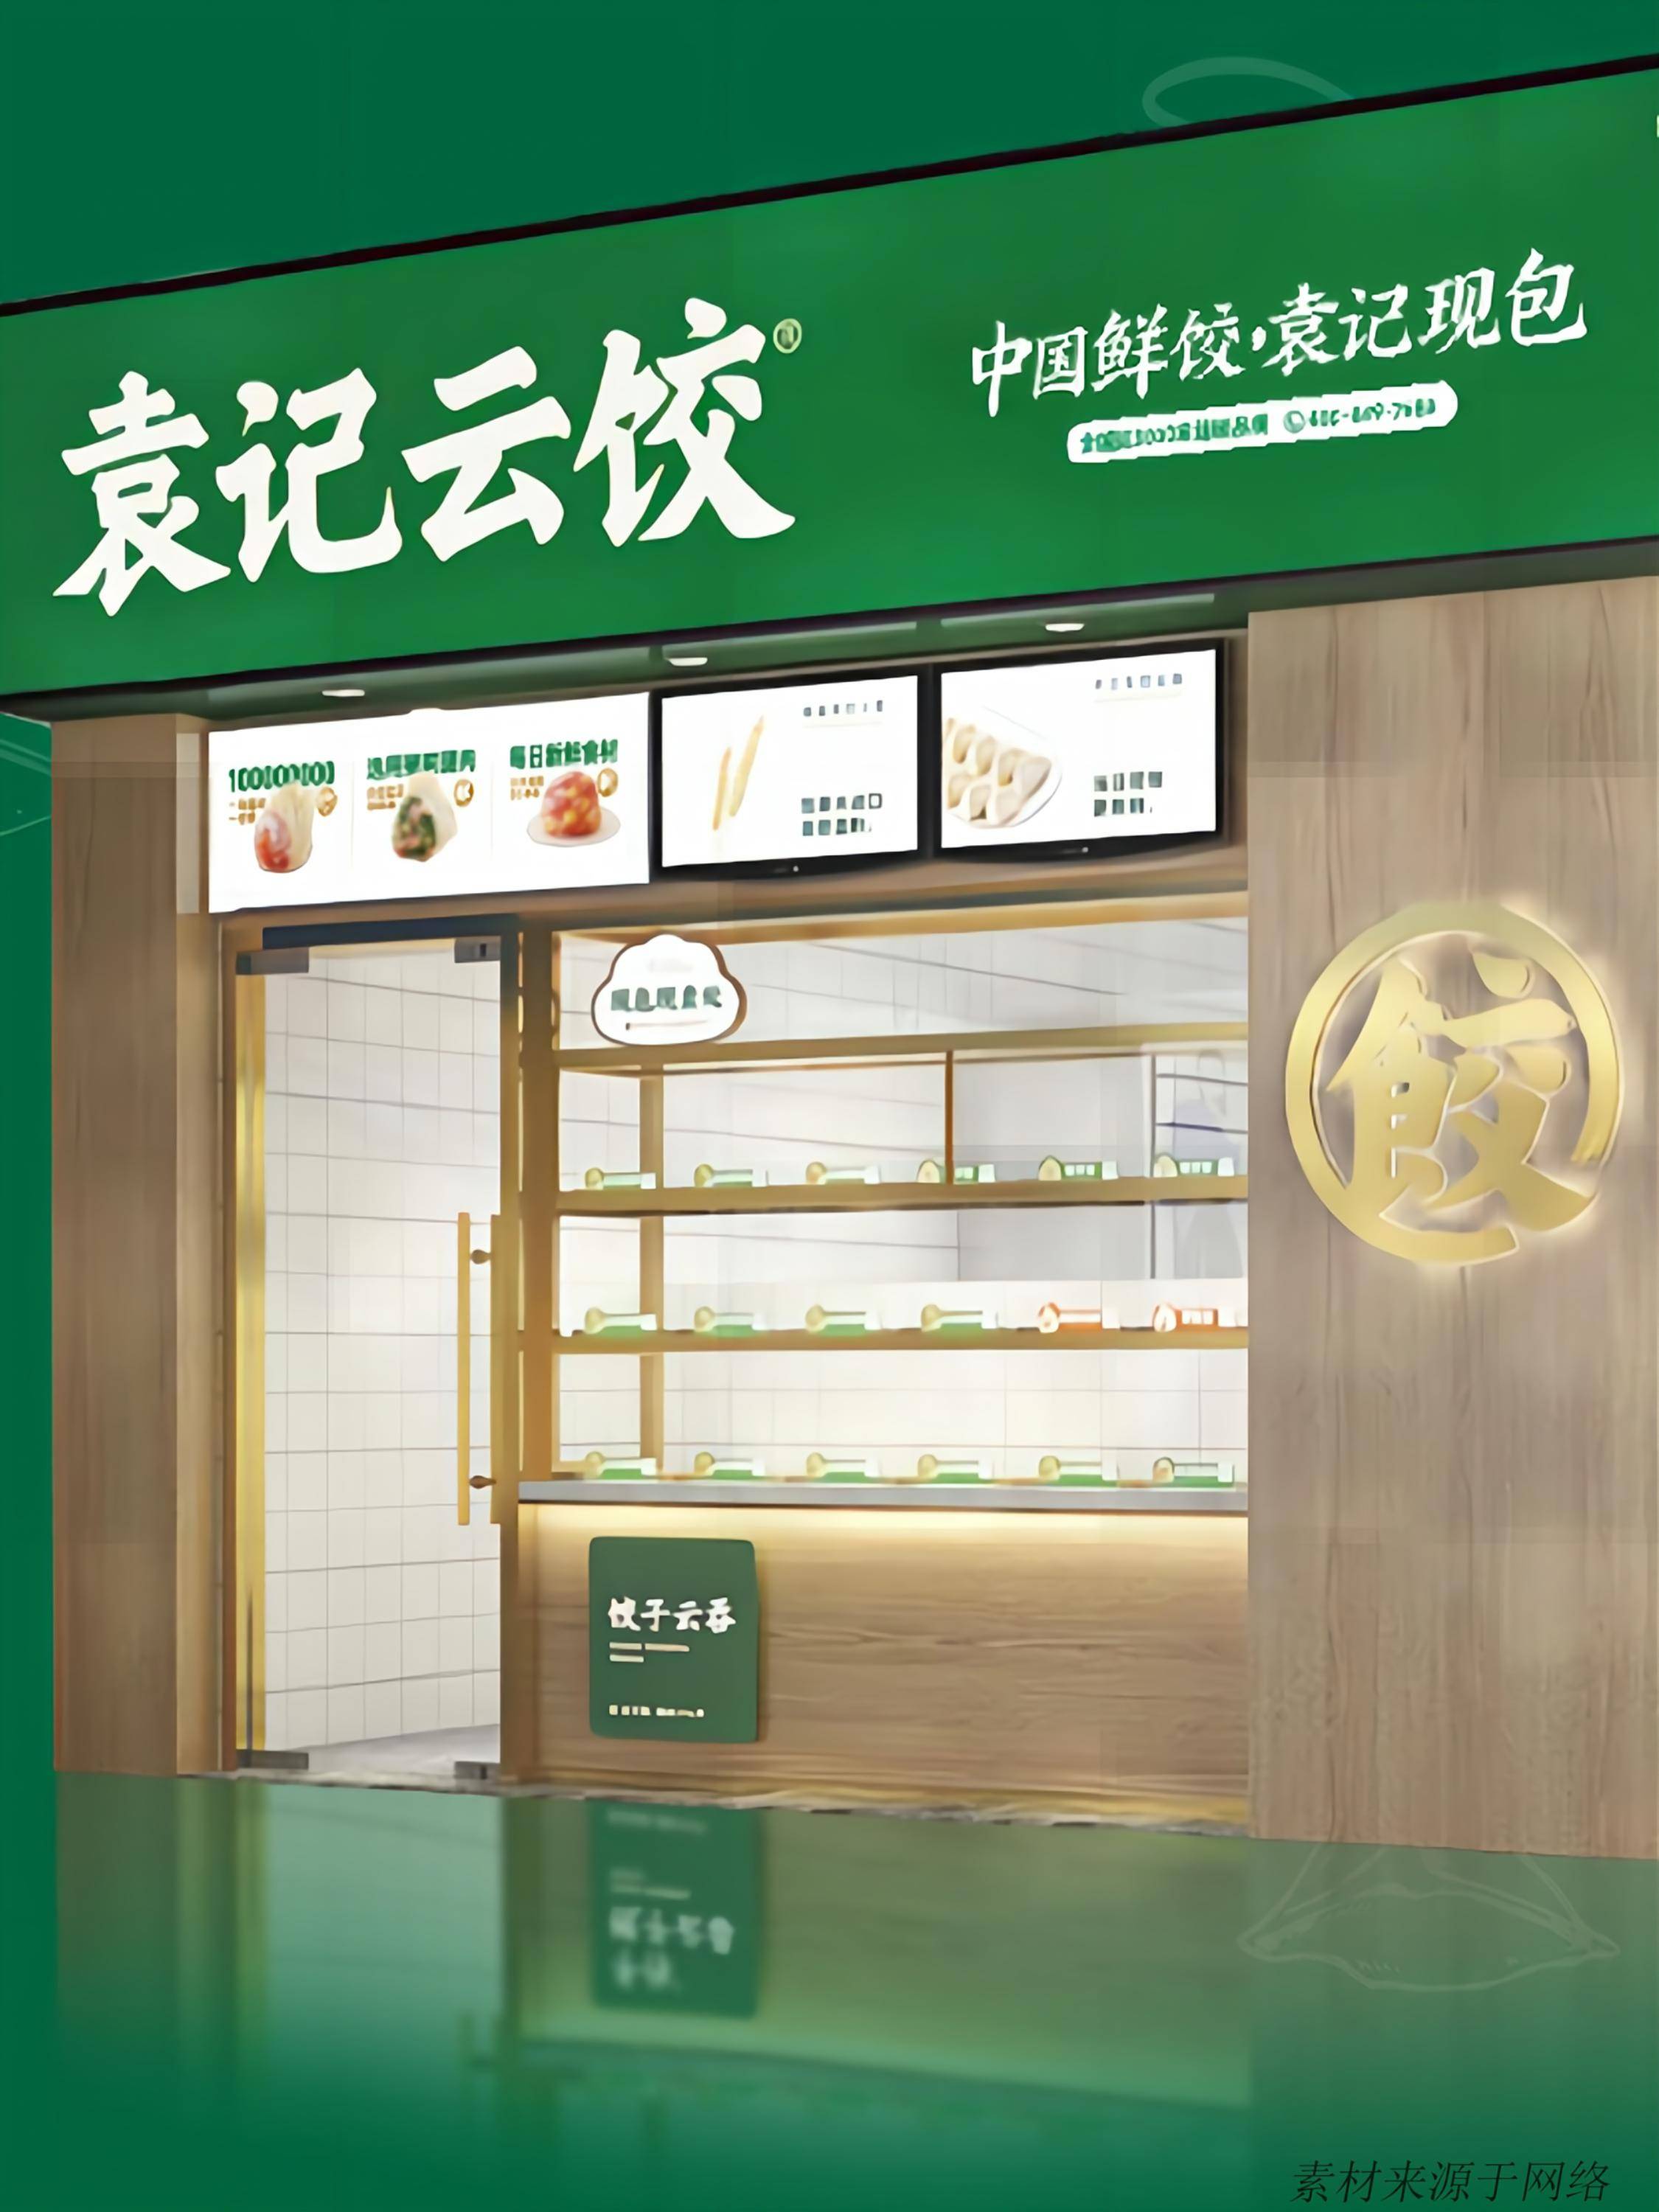 但我们来看另外一家新崛起的水饺品牌,袁记云饺,却采取了被大娘水饺